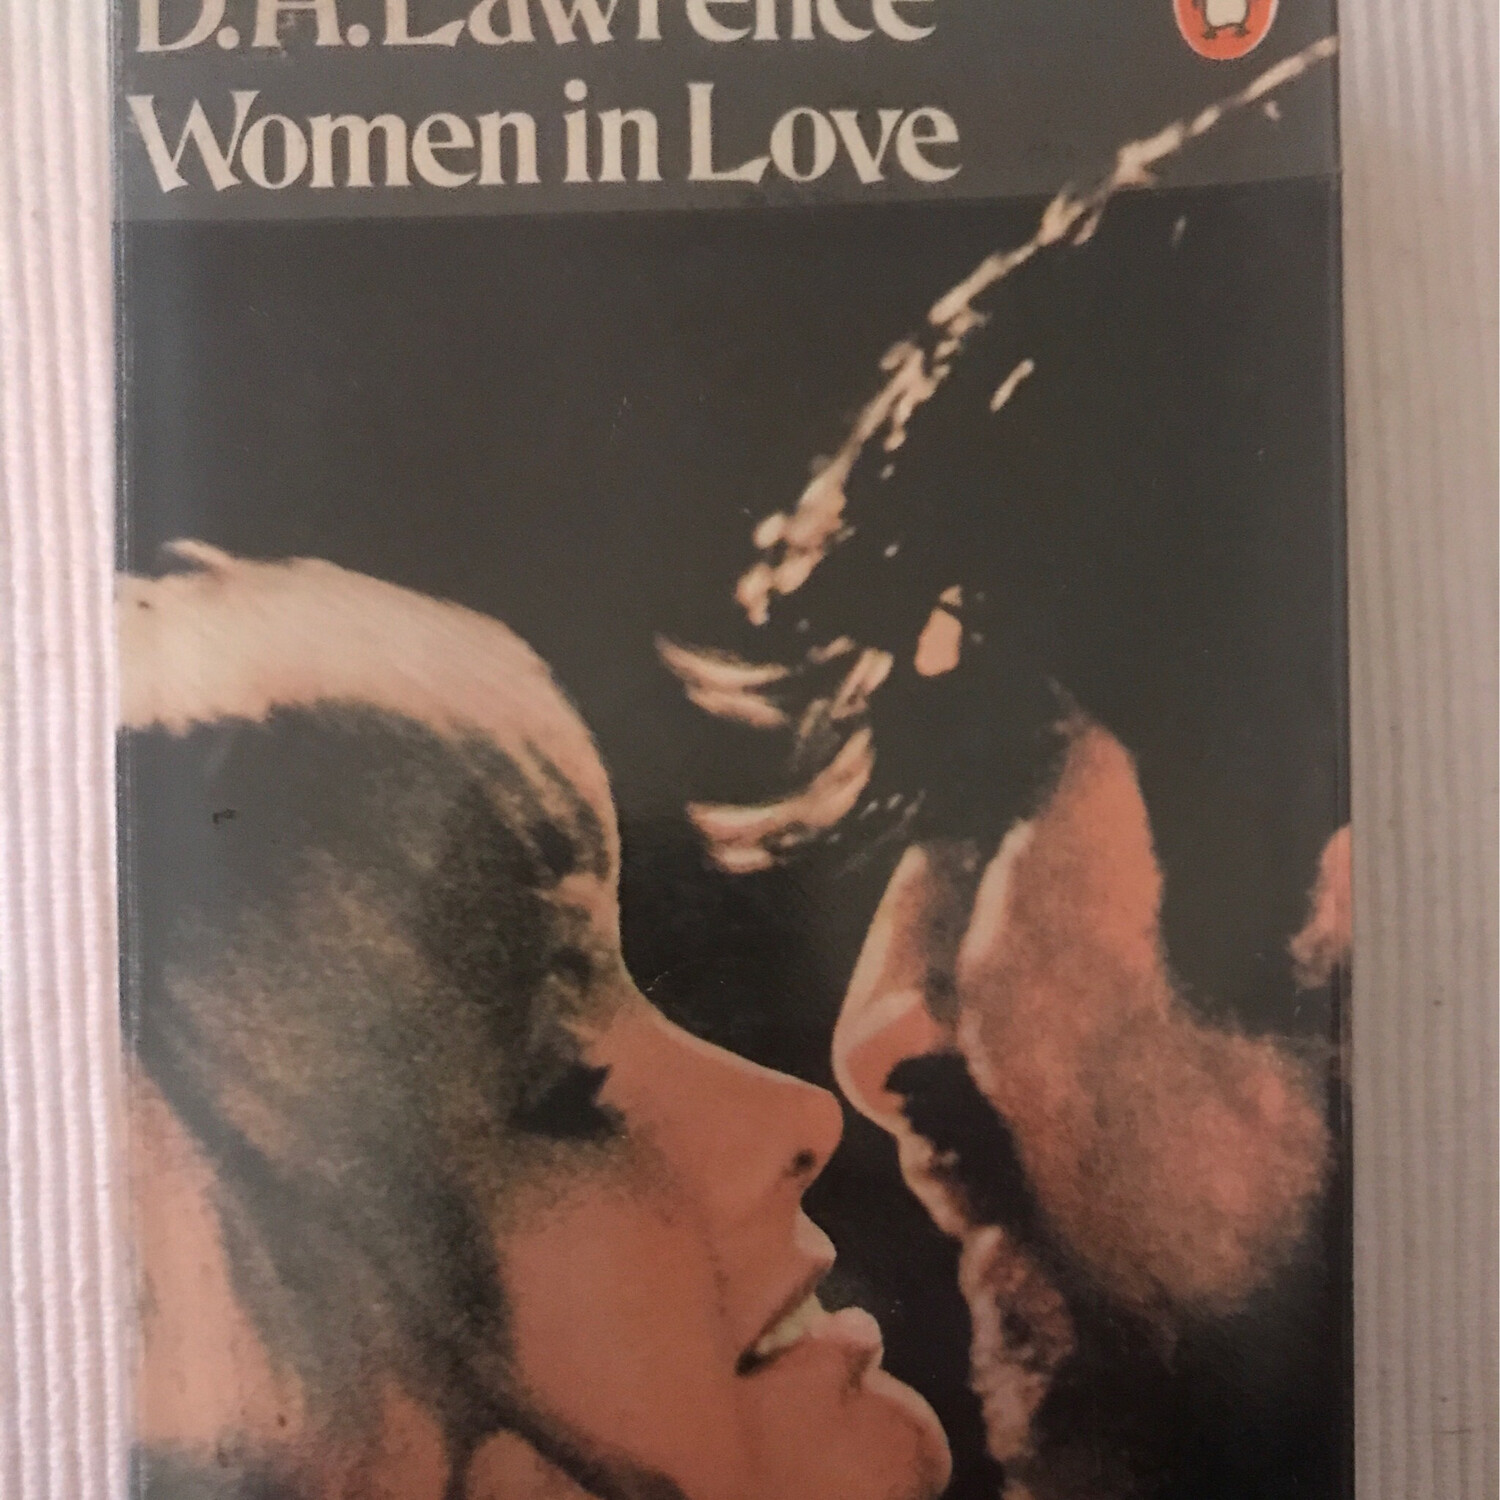 Women In Love, D. H. Lawrence